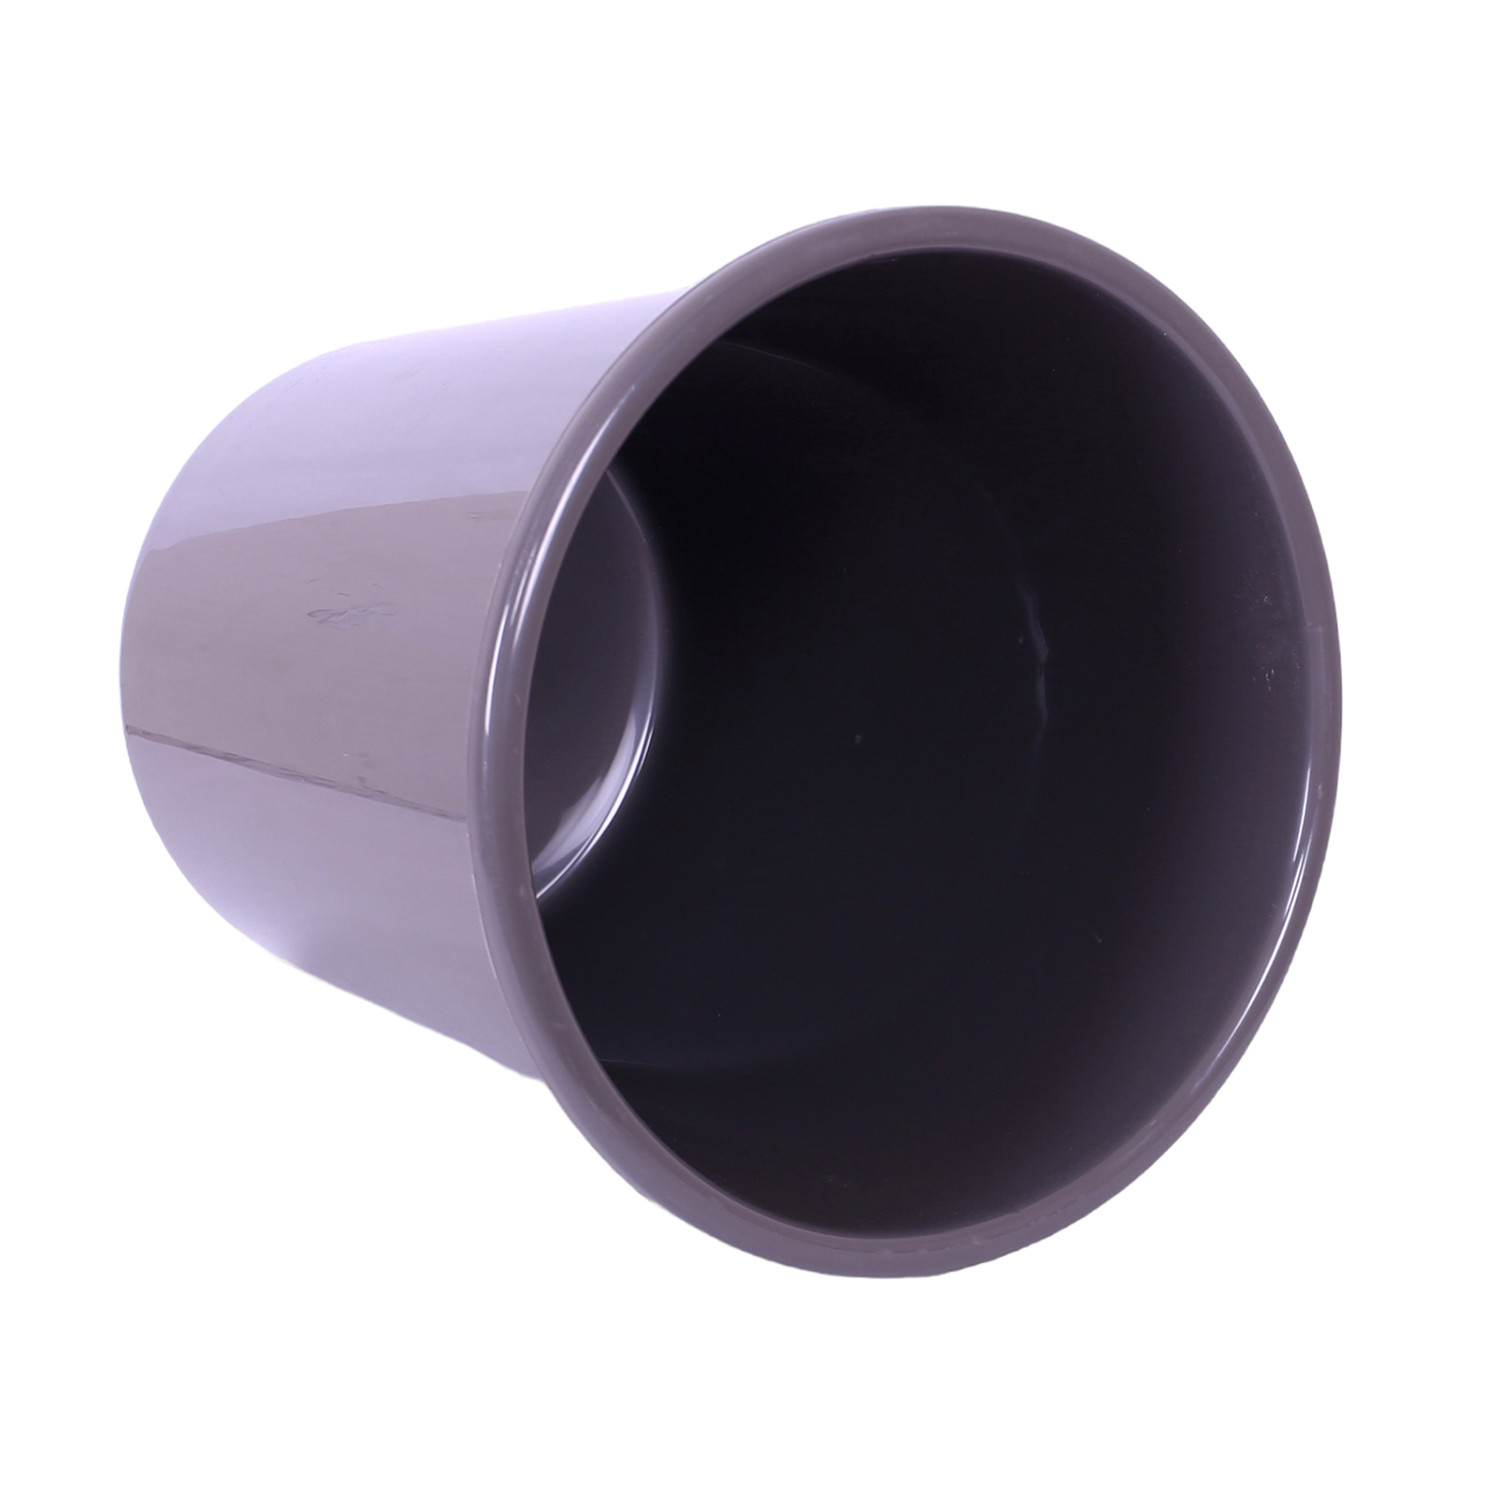 Kuber Industries Dustbin | Open Dustbin | Plastic Garbage Dustbin | Dustbin For Kitchen | Dustbin For Bathroom | Office Dustbin | Plain Sada Dustbin | 10 LTR | Gray